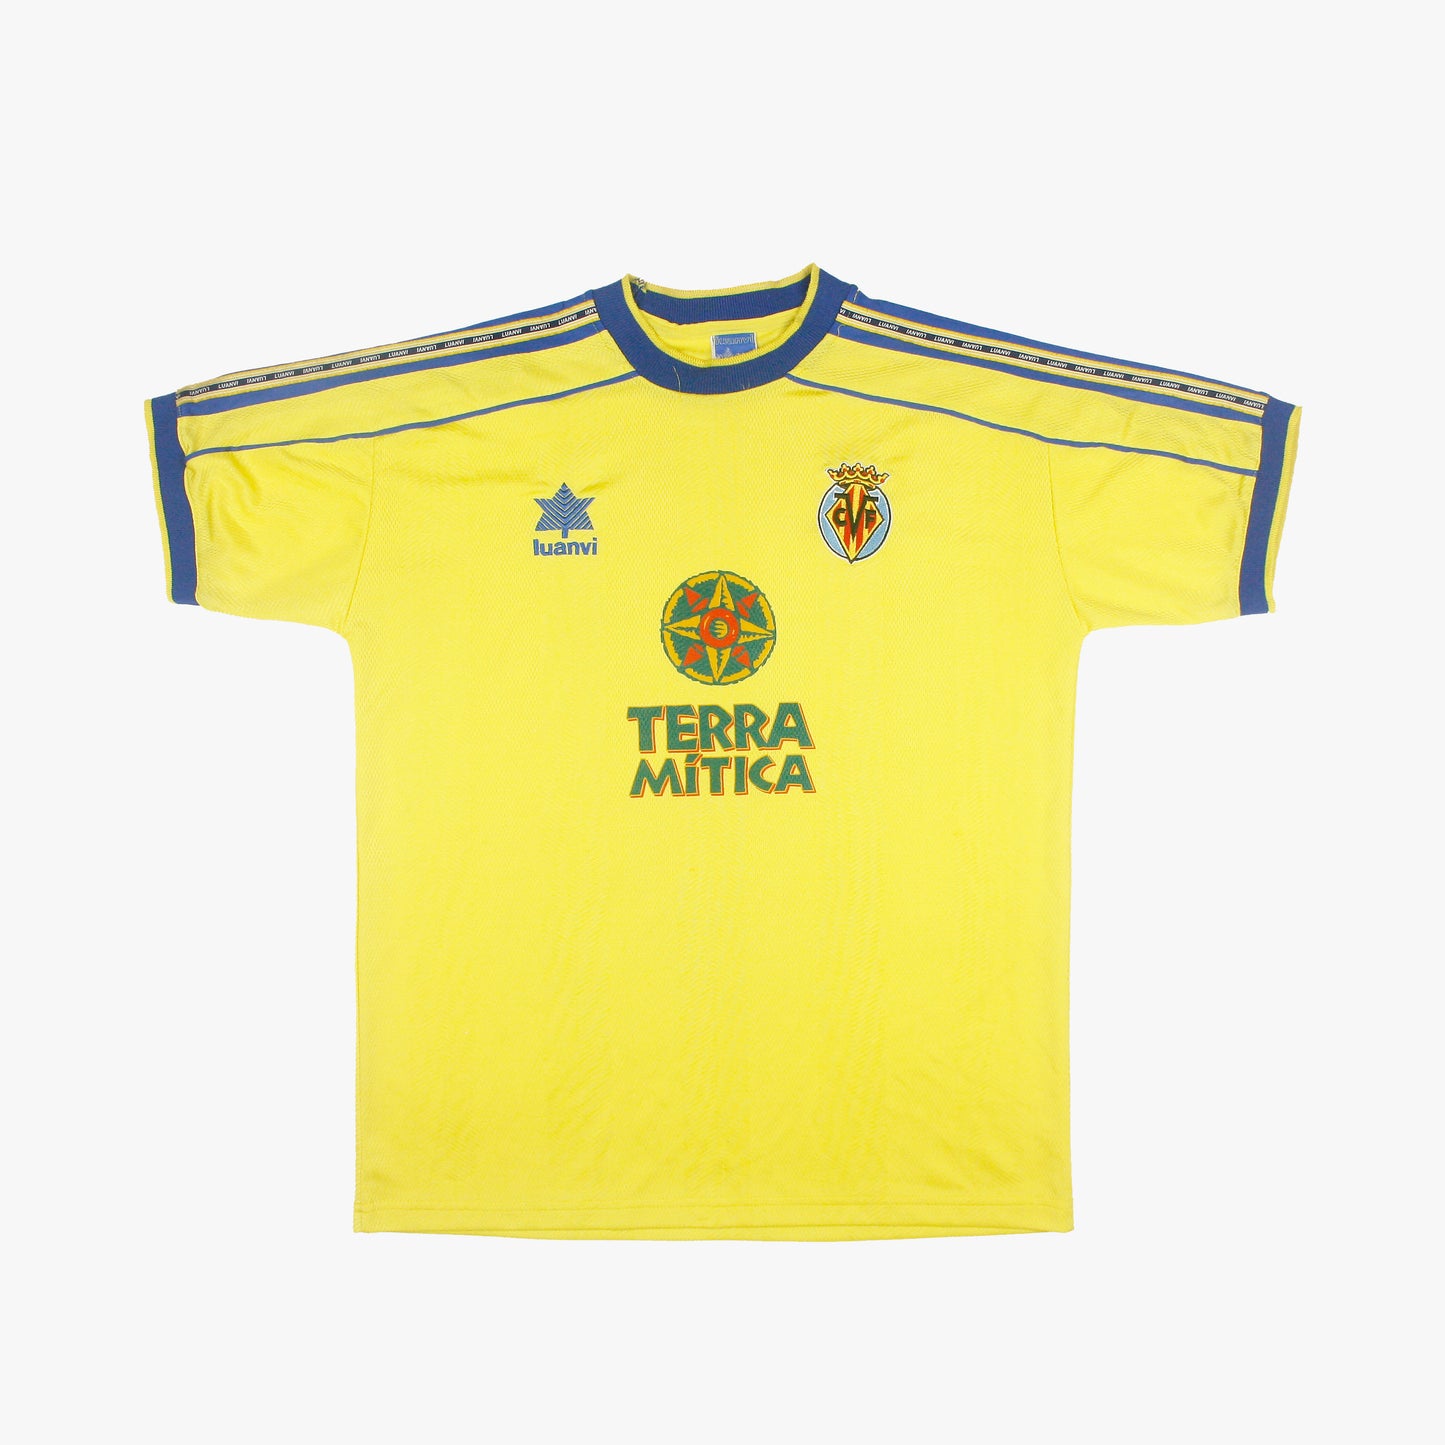 Villarreal 98/99 • Camiseta Local • M